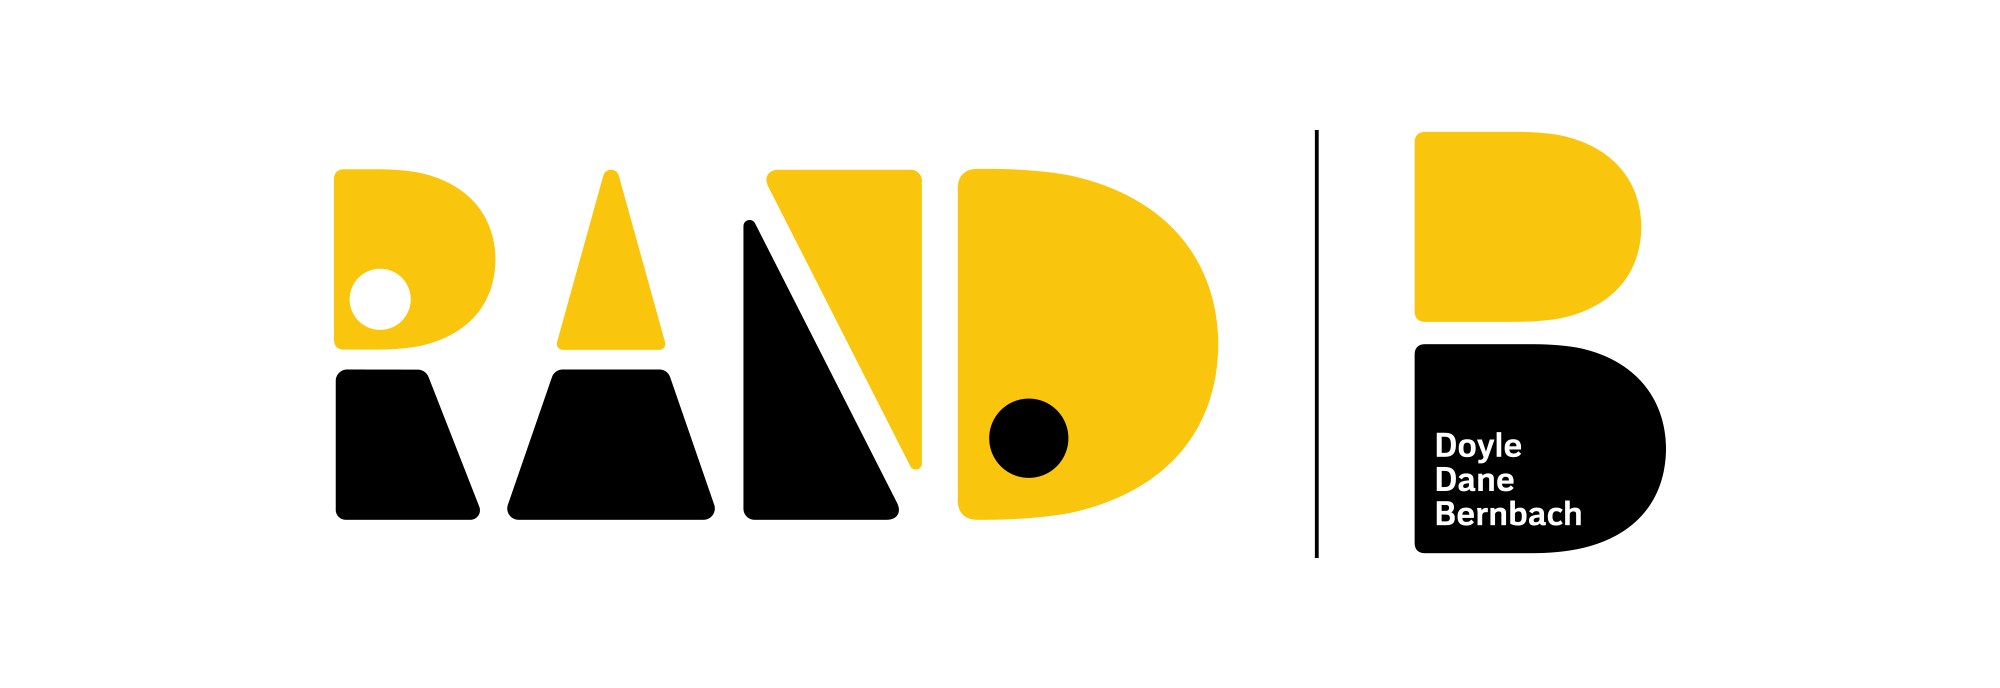 Final Rand DDB logo